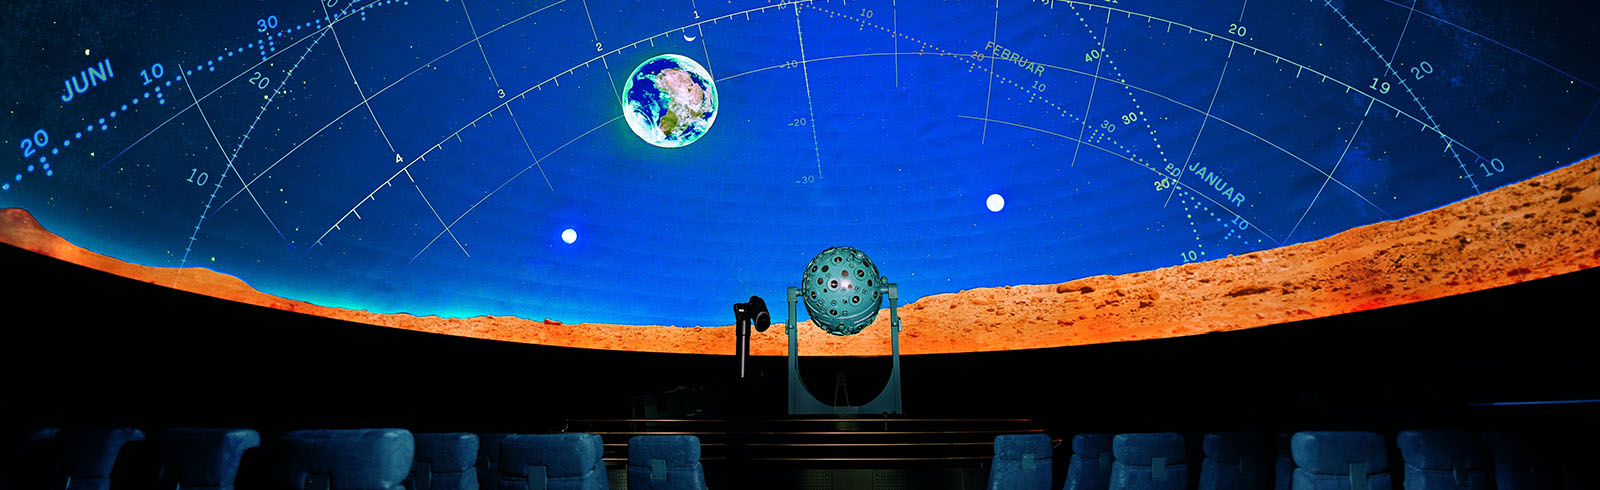 Das Planetarium Wien hat wieder geöffnet